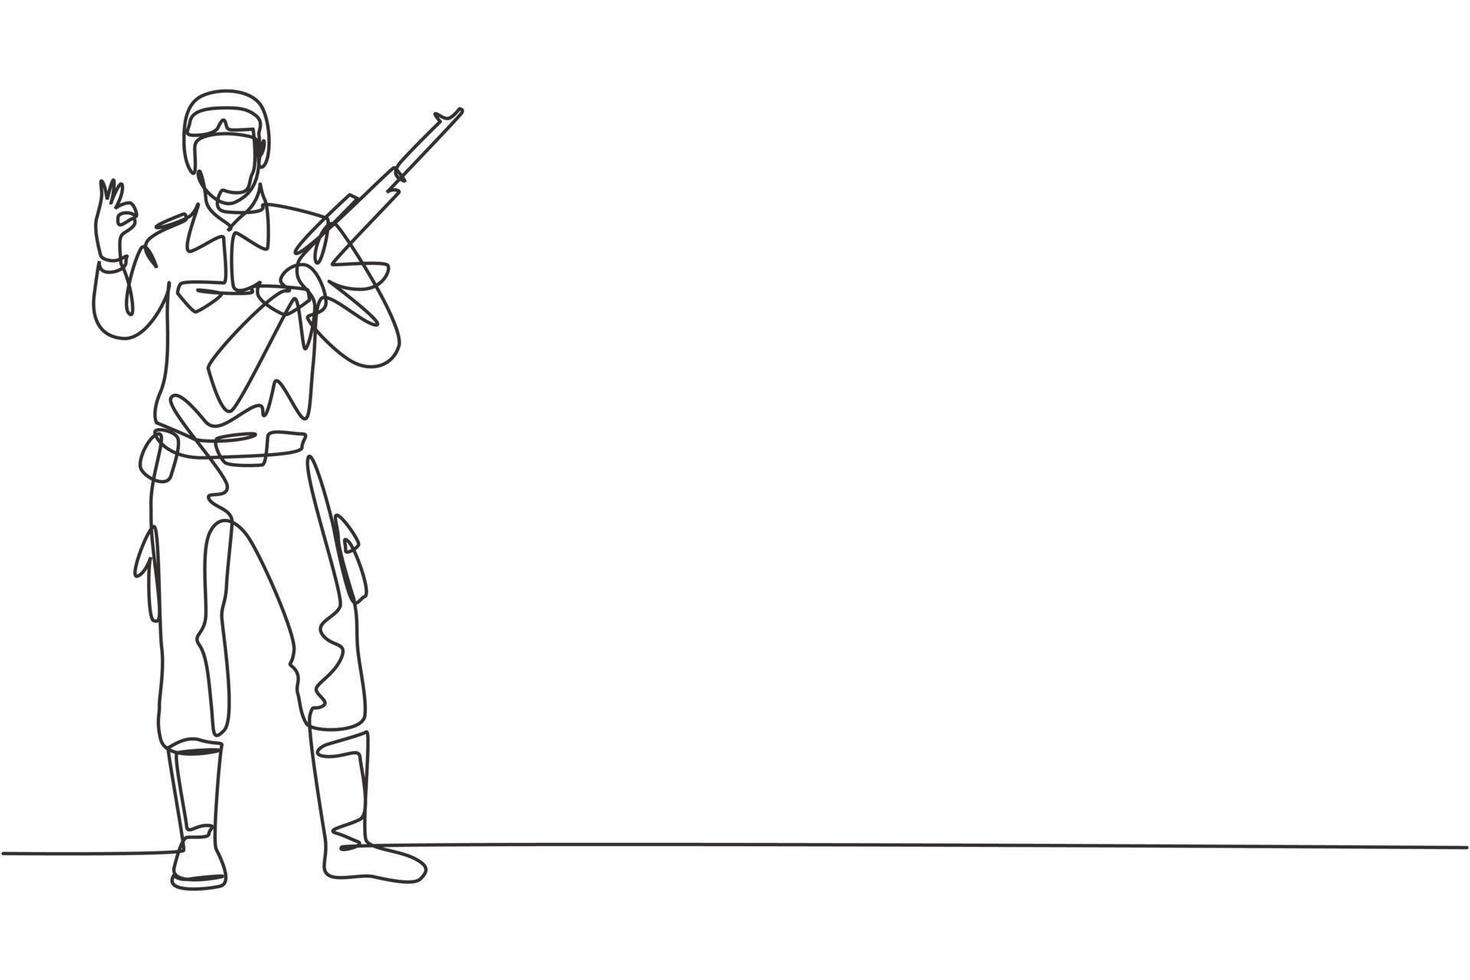 enda kontinuerlig linjeteckning soldat står med vapen, hel uniform och gest okej som tjänar landet med styrka av militära styrkor. dynamisk en linje rita grafisk design vektor illustration